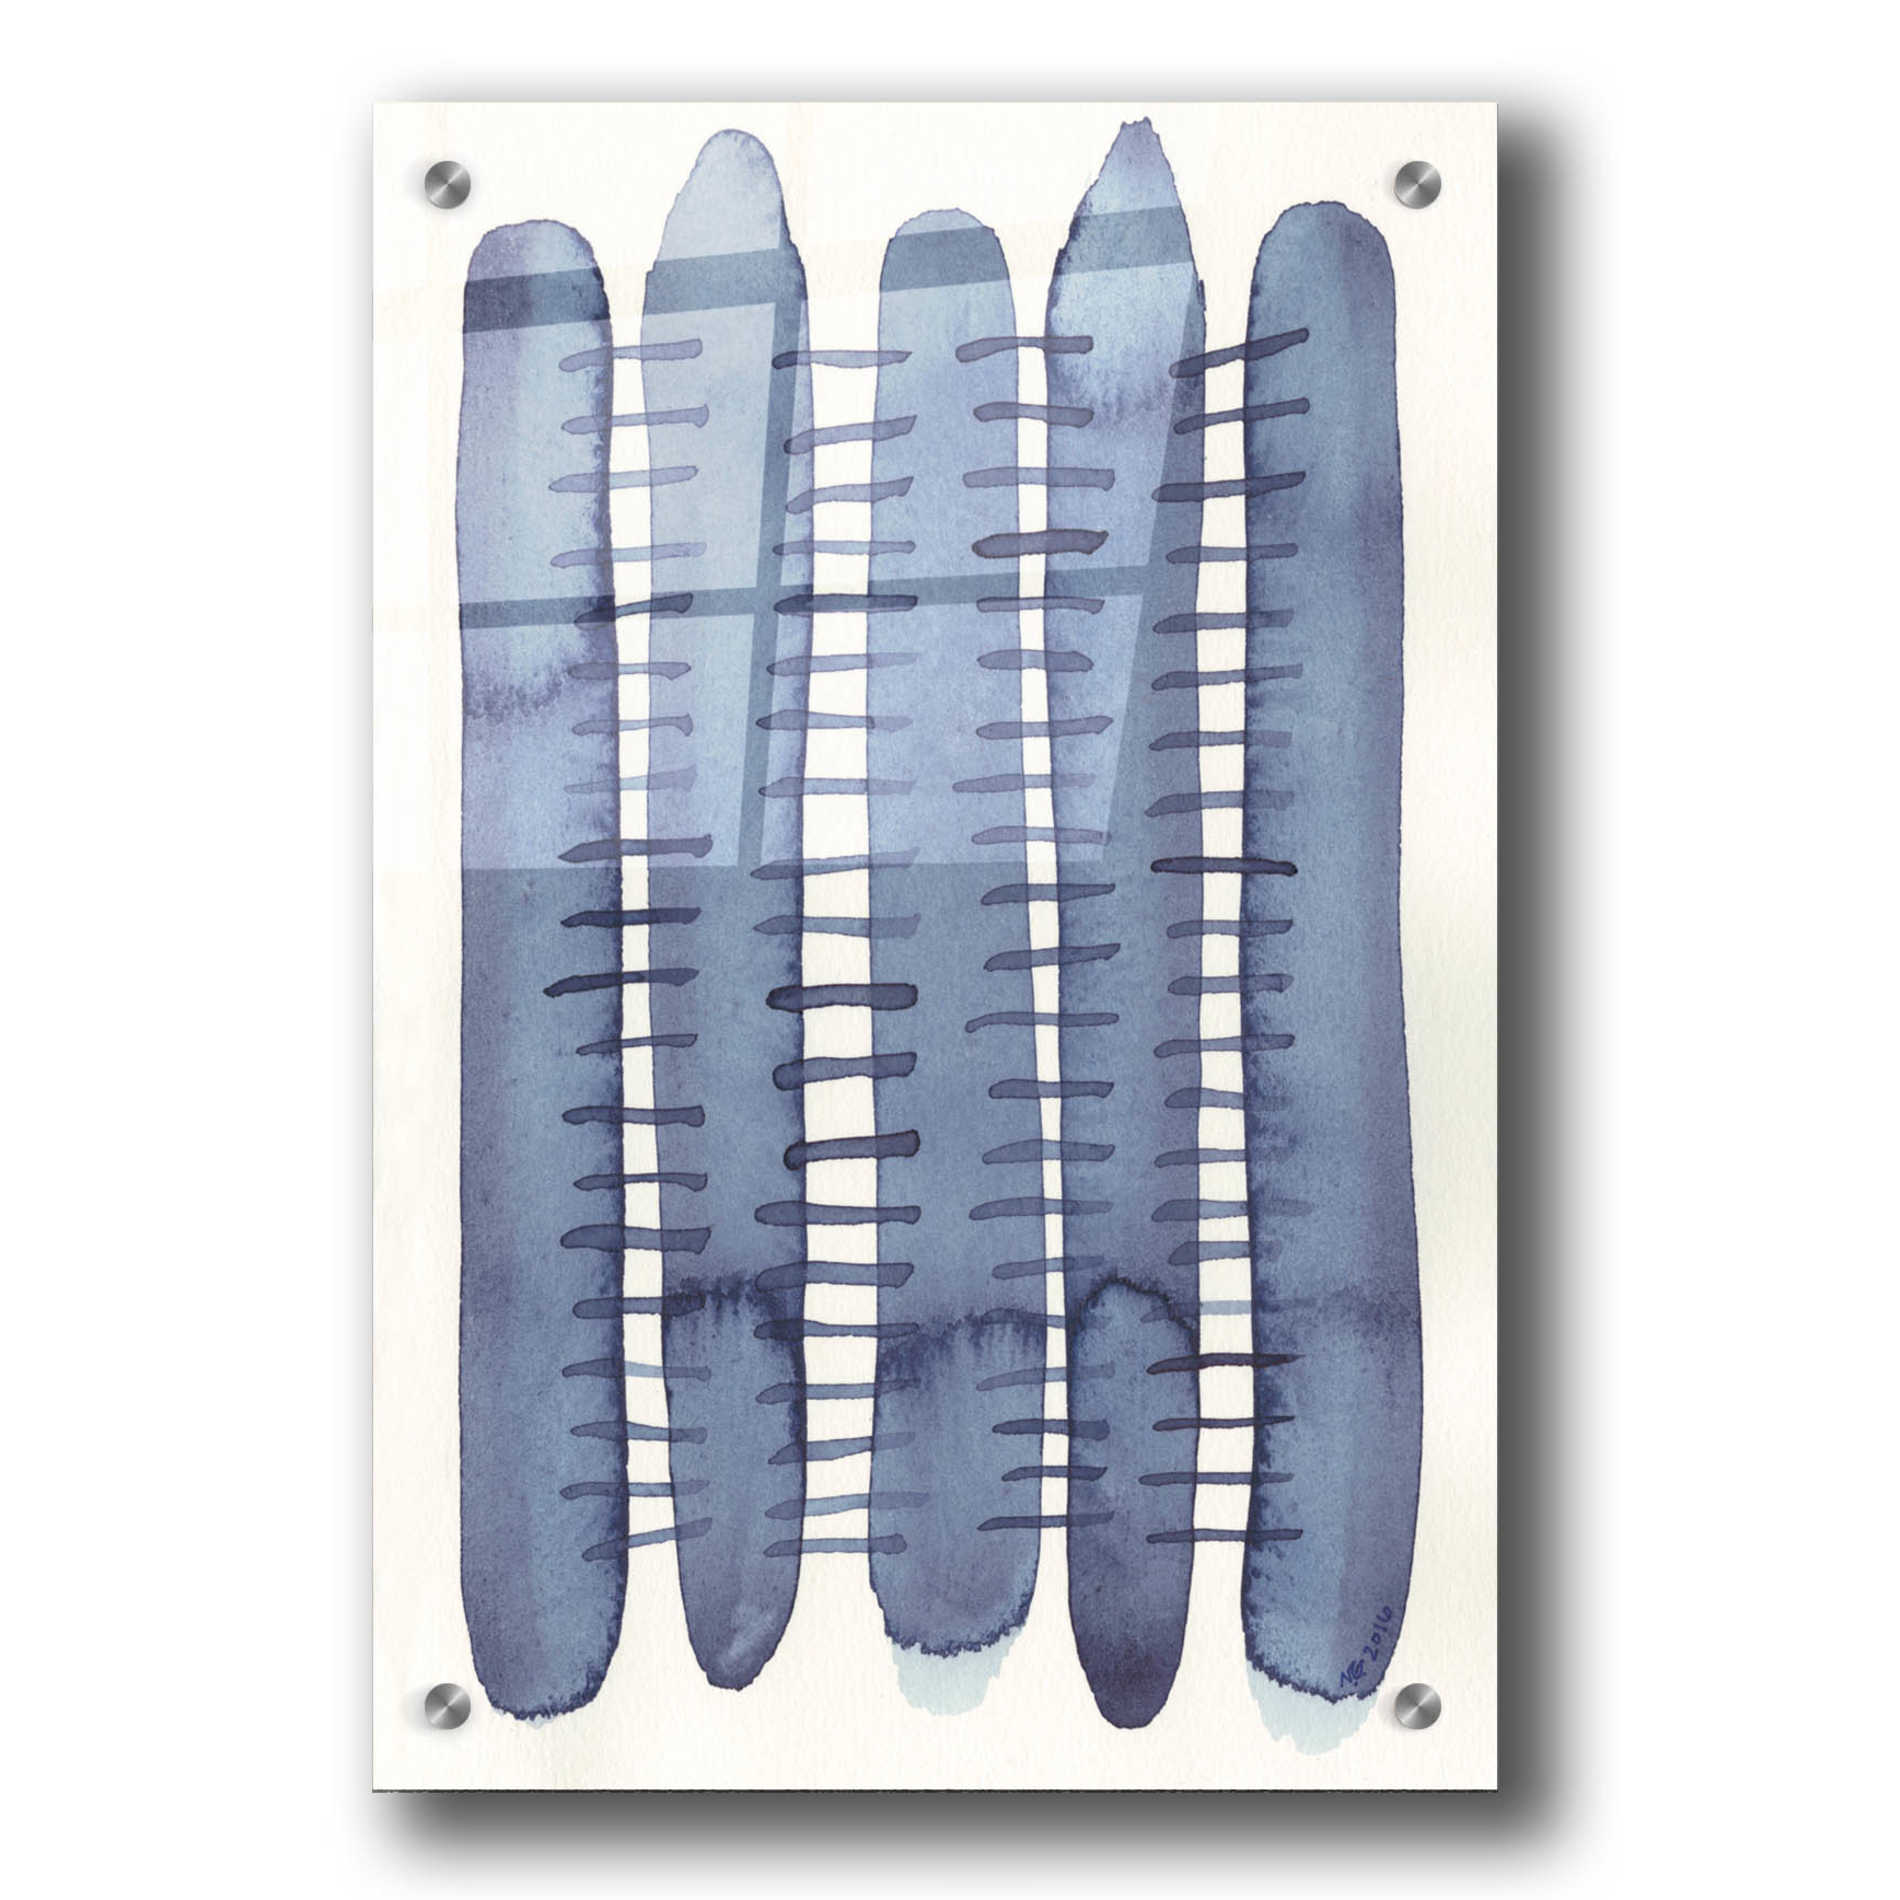 Epic Art 'Indigo Stitchy II' by Nikki Galapon, Acrylic Glass Wall Art,24x36